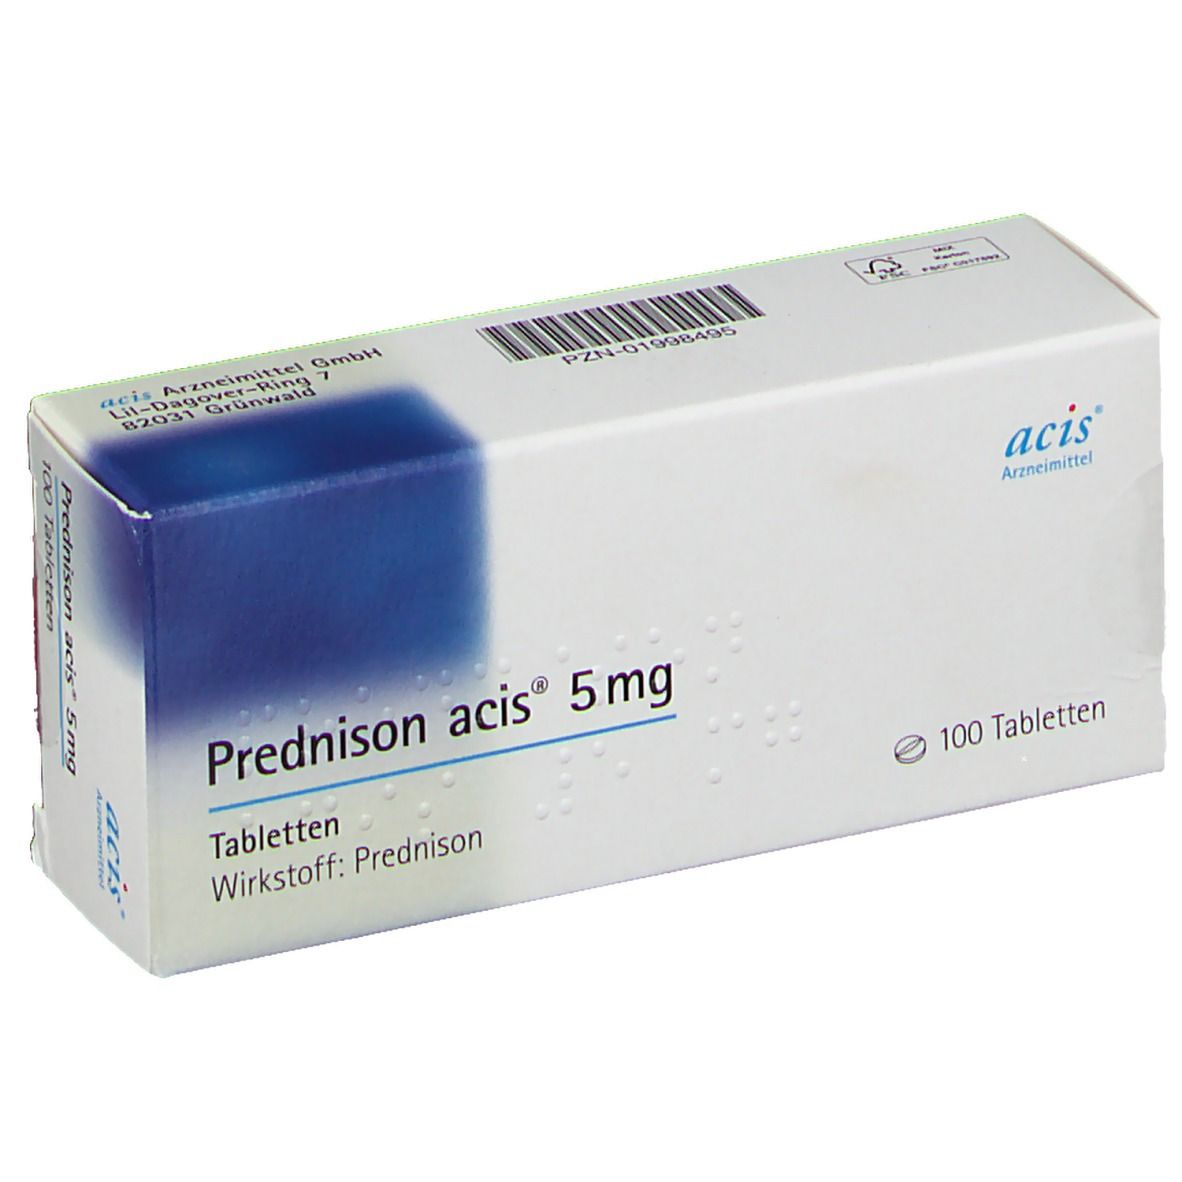 Prednison acis® 5Mg